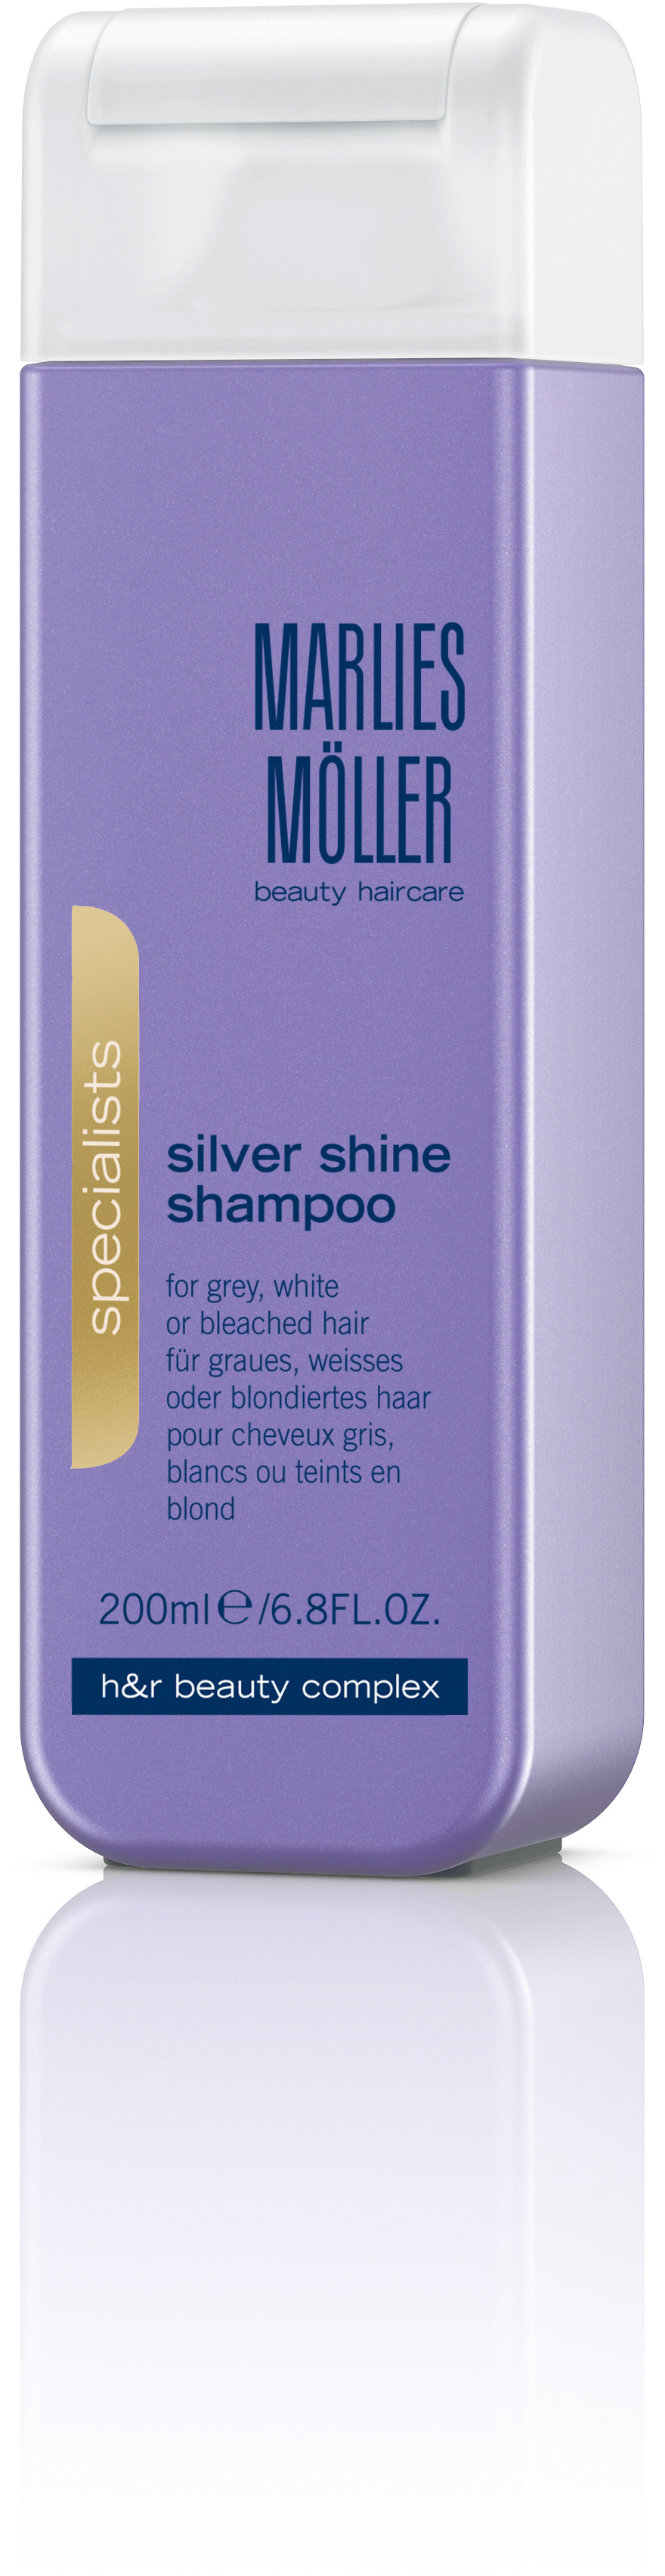 Marlies Möller Clean Silver Shine Shampoo 200 ml